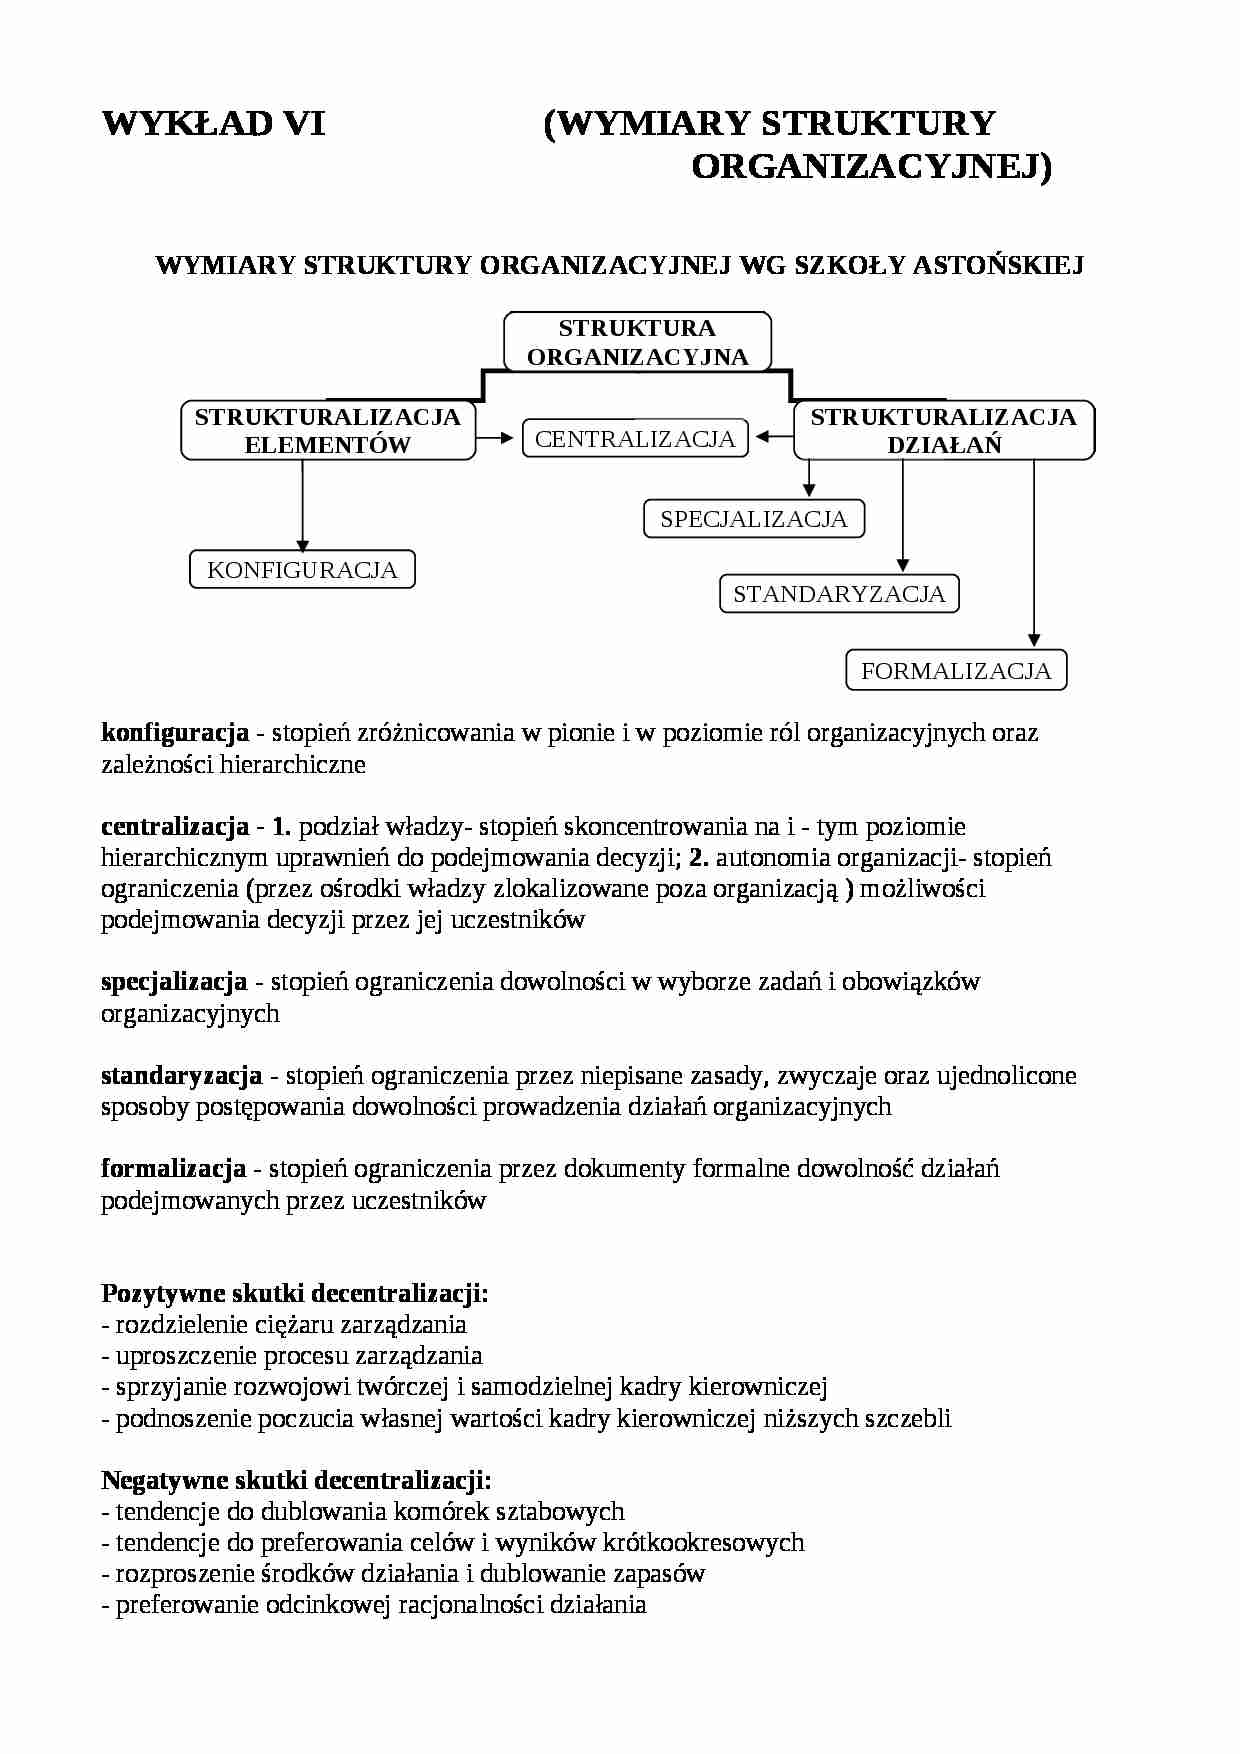 Wymiary struktury organizacyjnej - strona 1